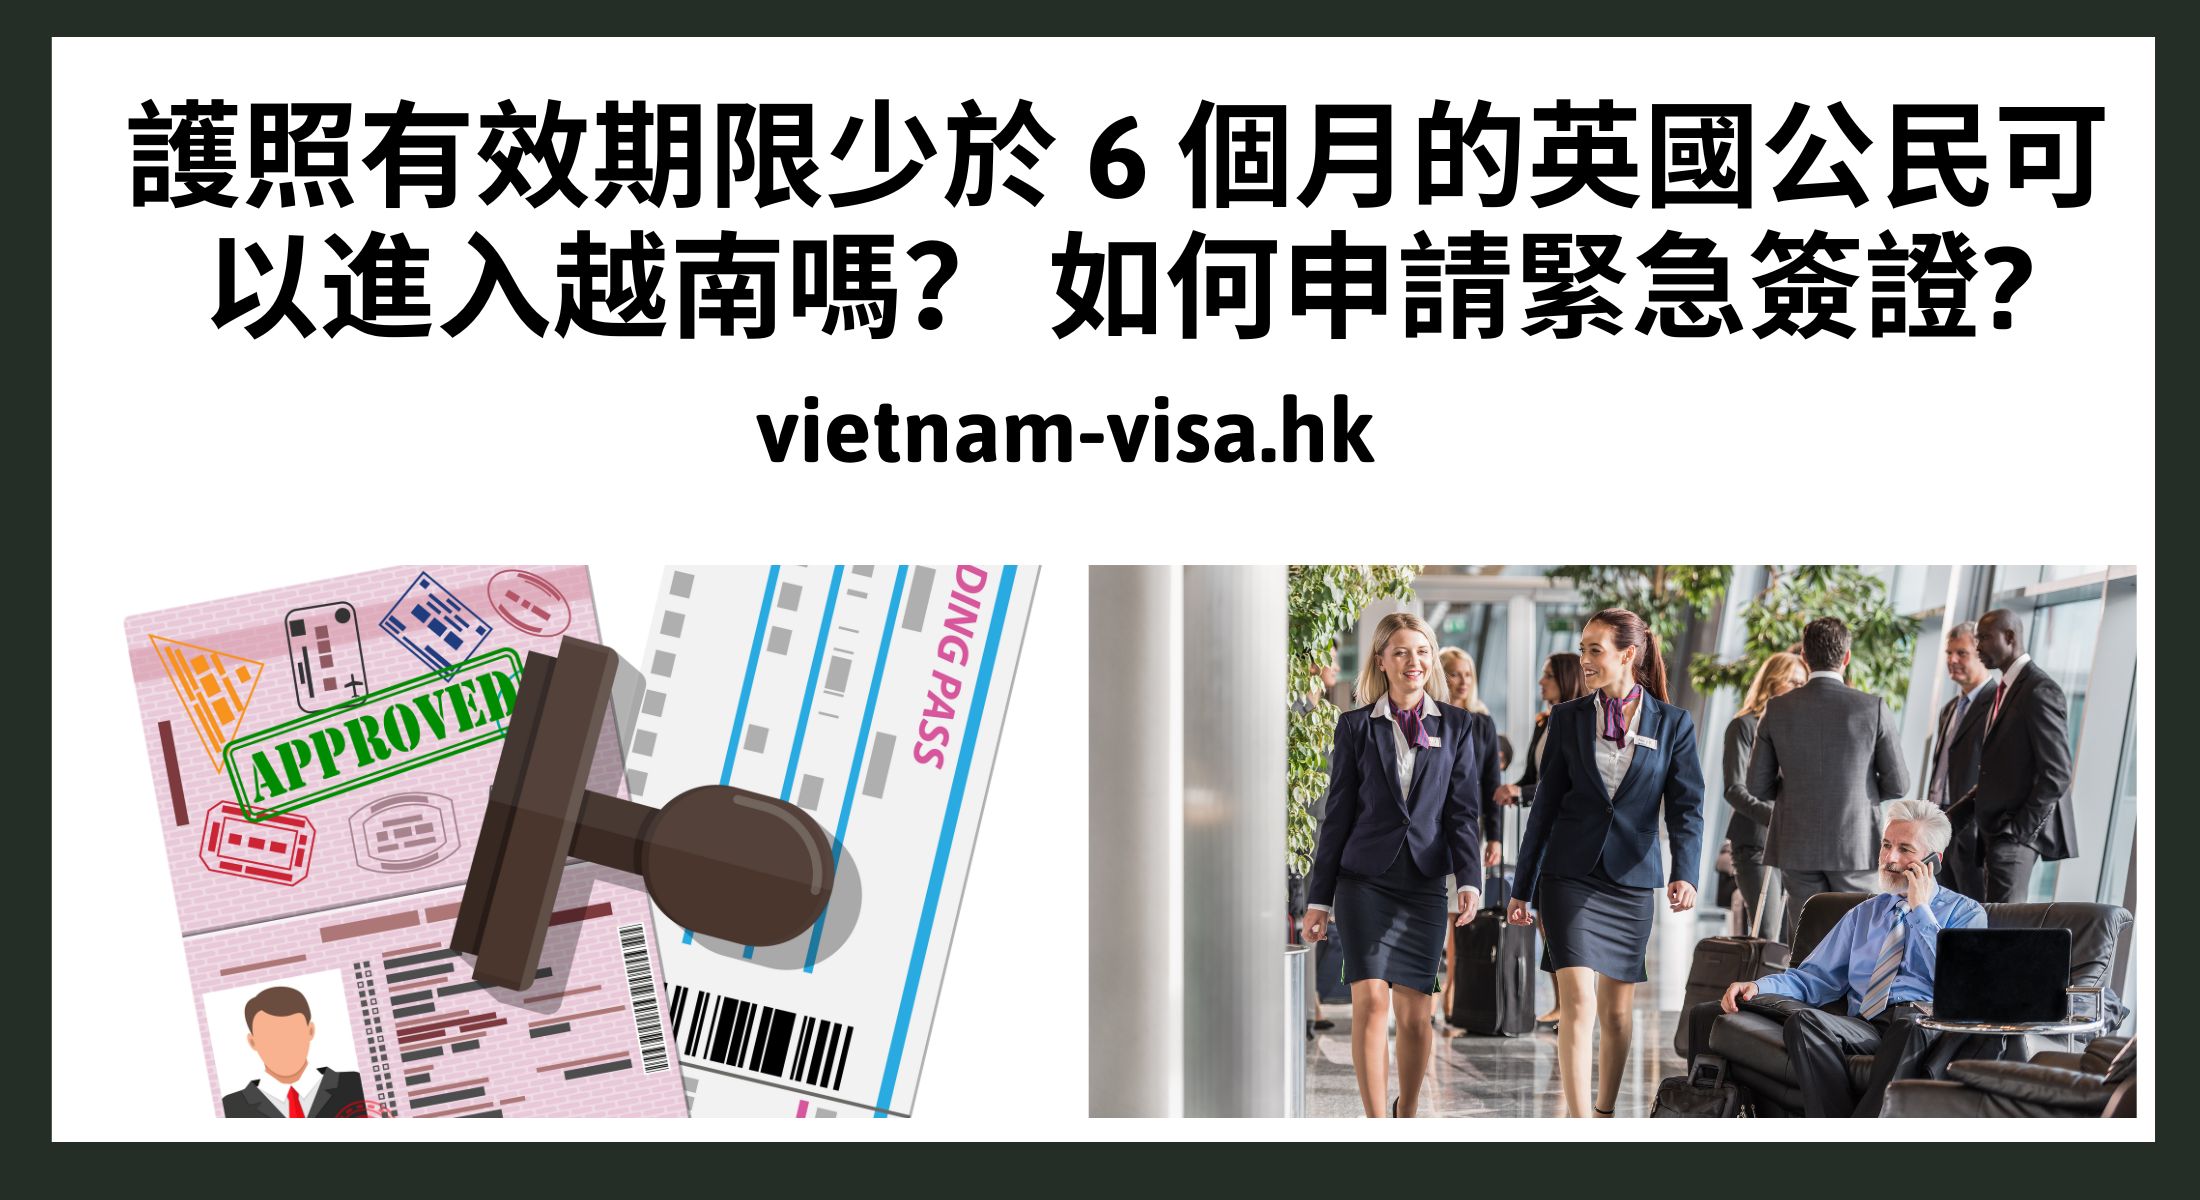 護照有效期限少於 6 個月的英國公民可以進入越南嗎？ 如何申請緊急簽證?